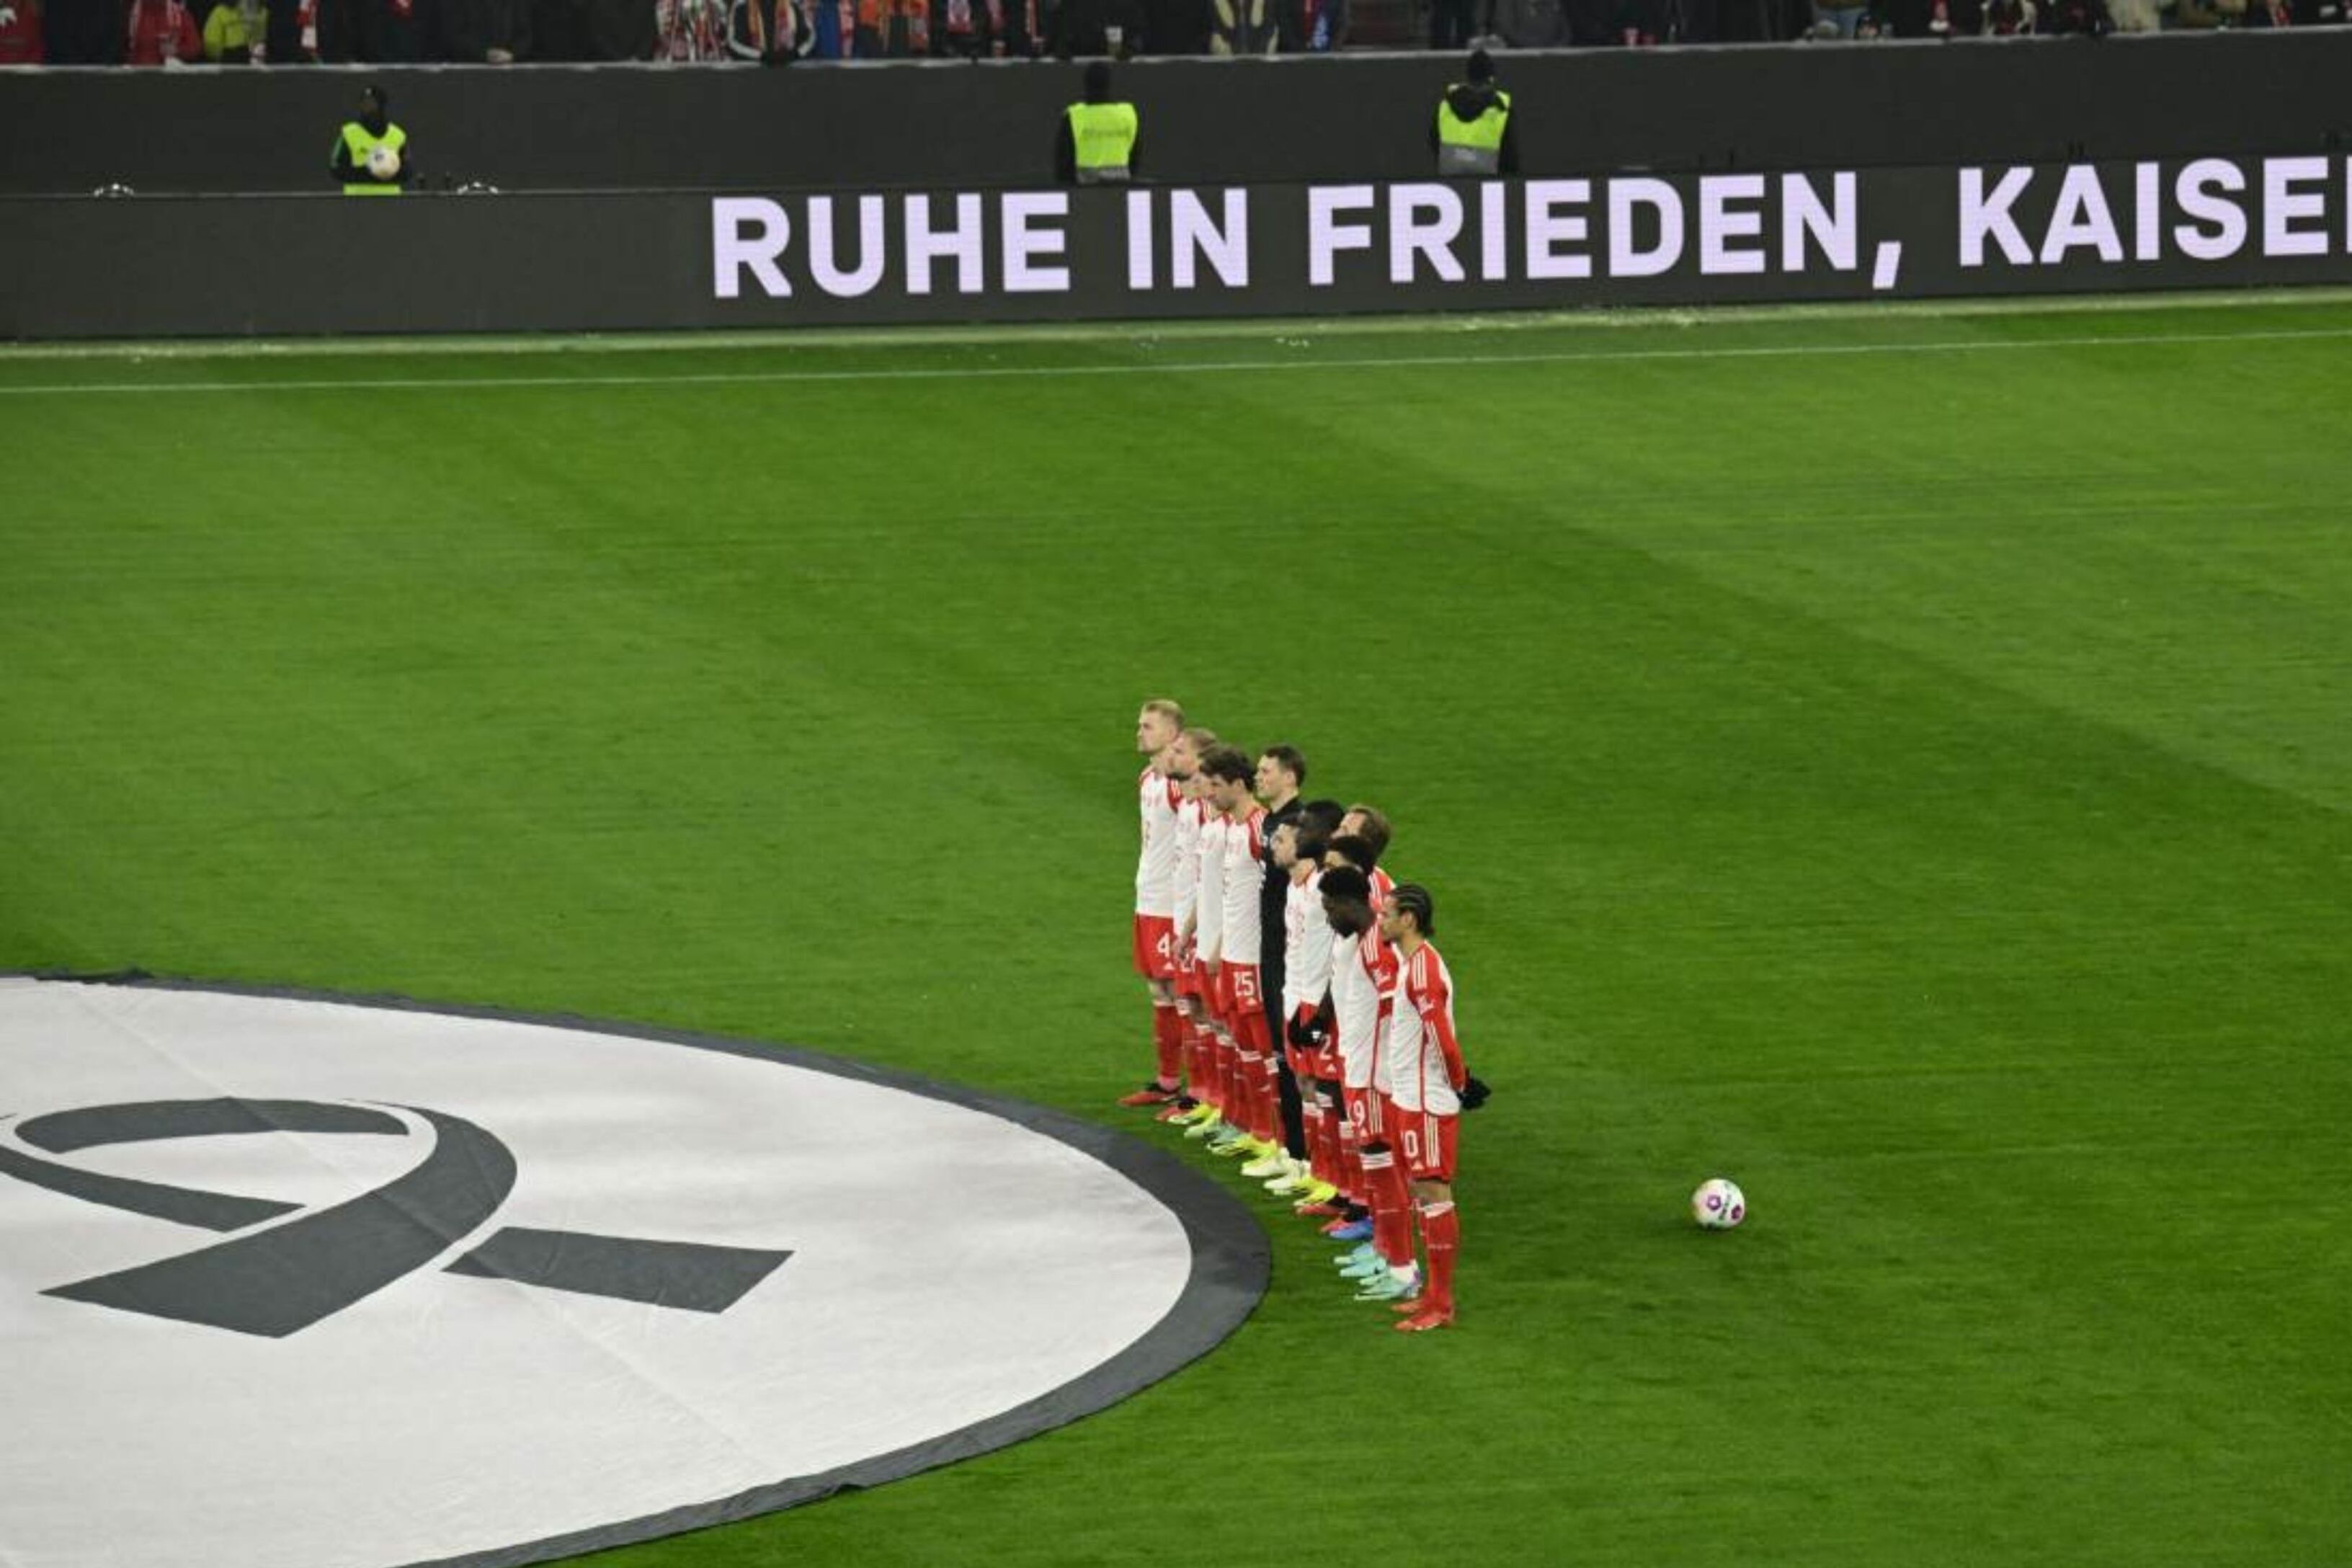 Emotivo homenaje de despedida del Bayern Múnich a Franz Beckenbauer